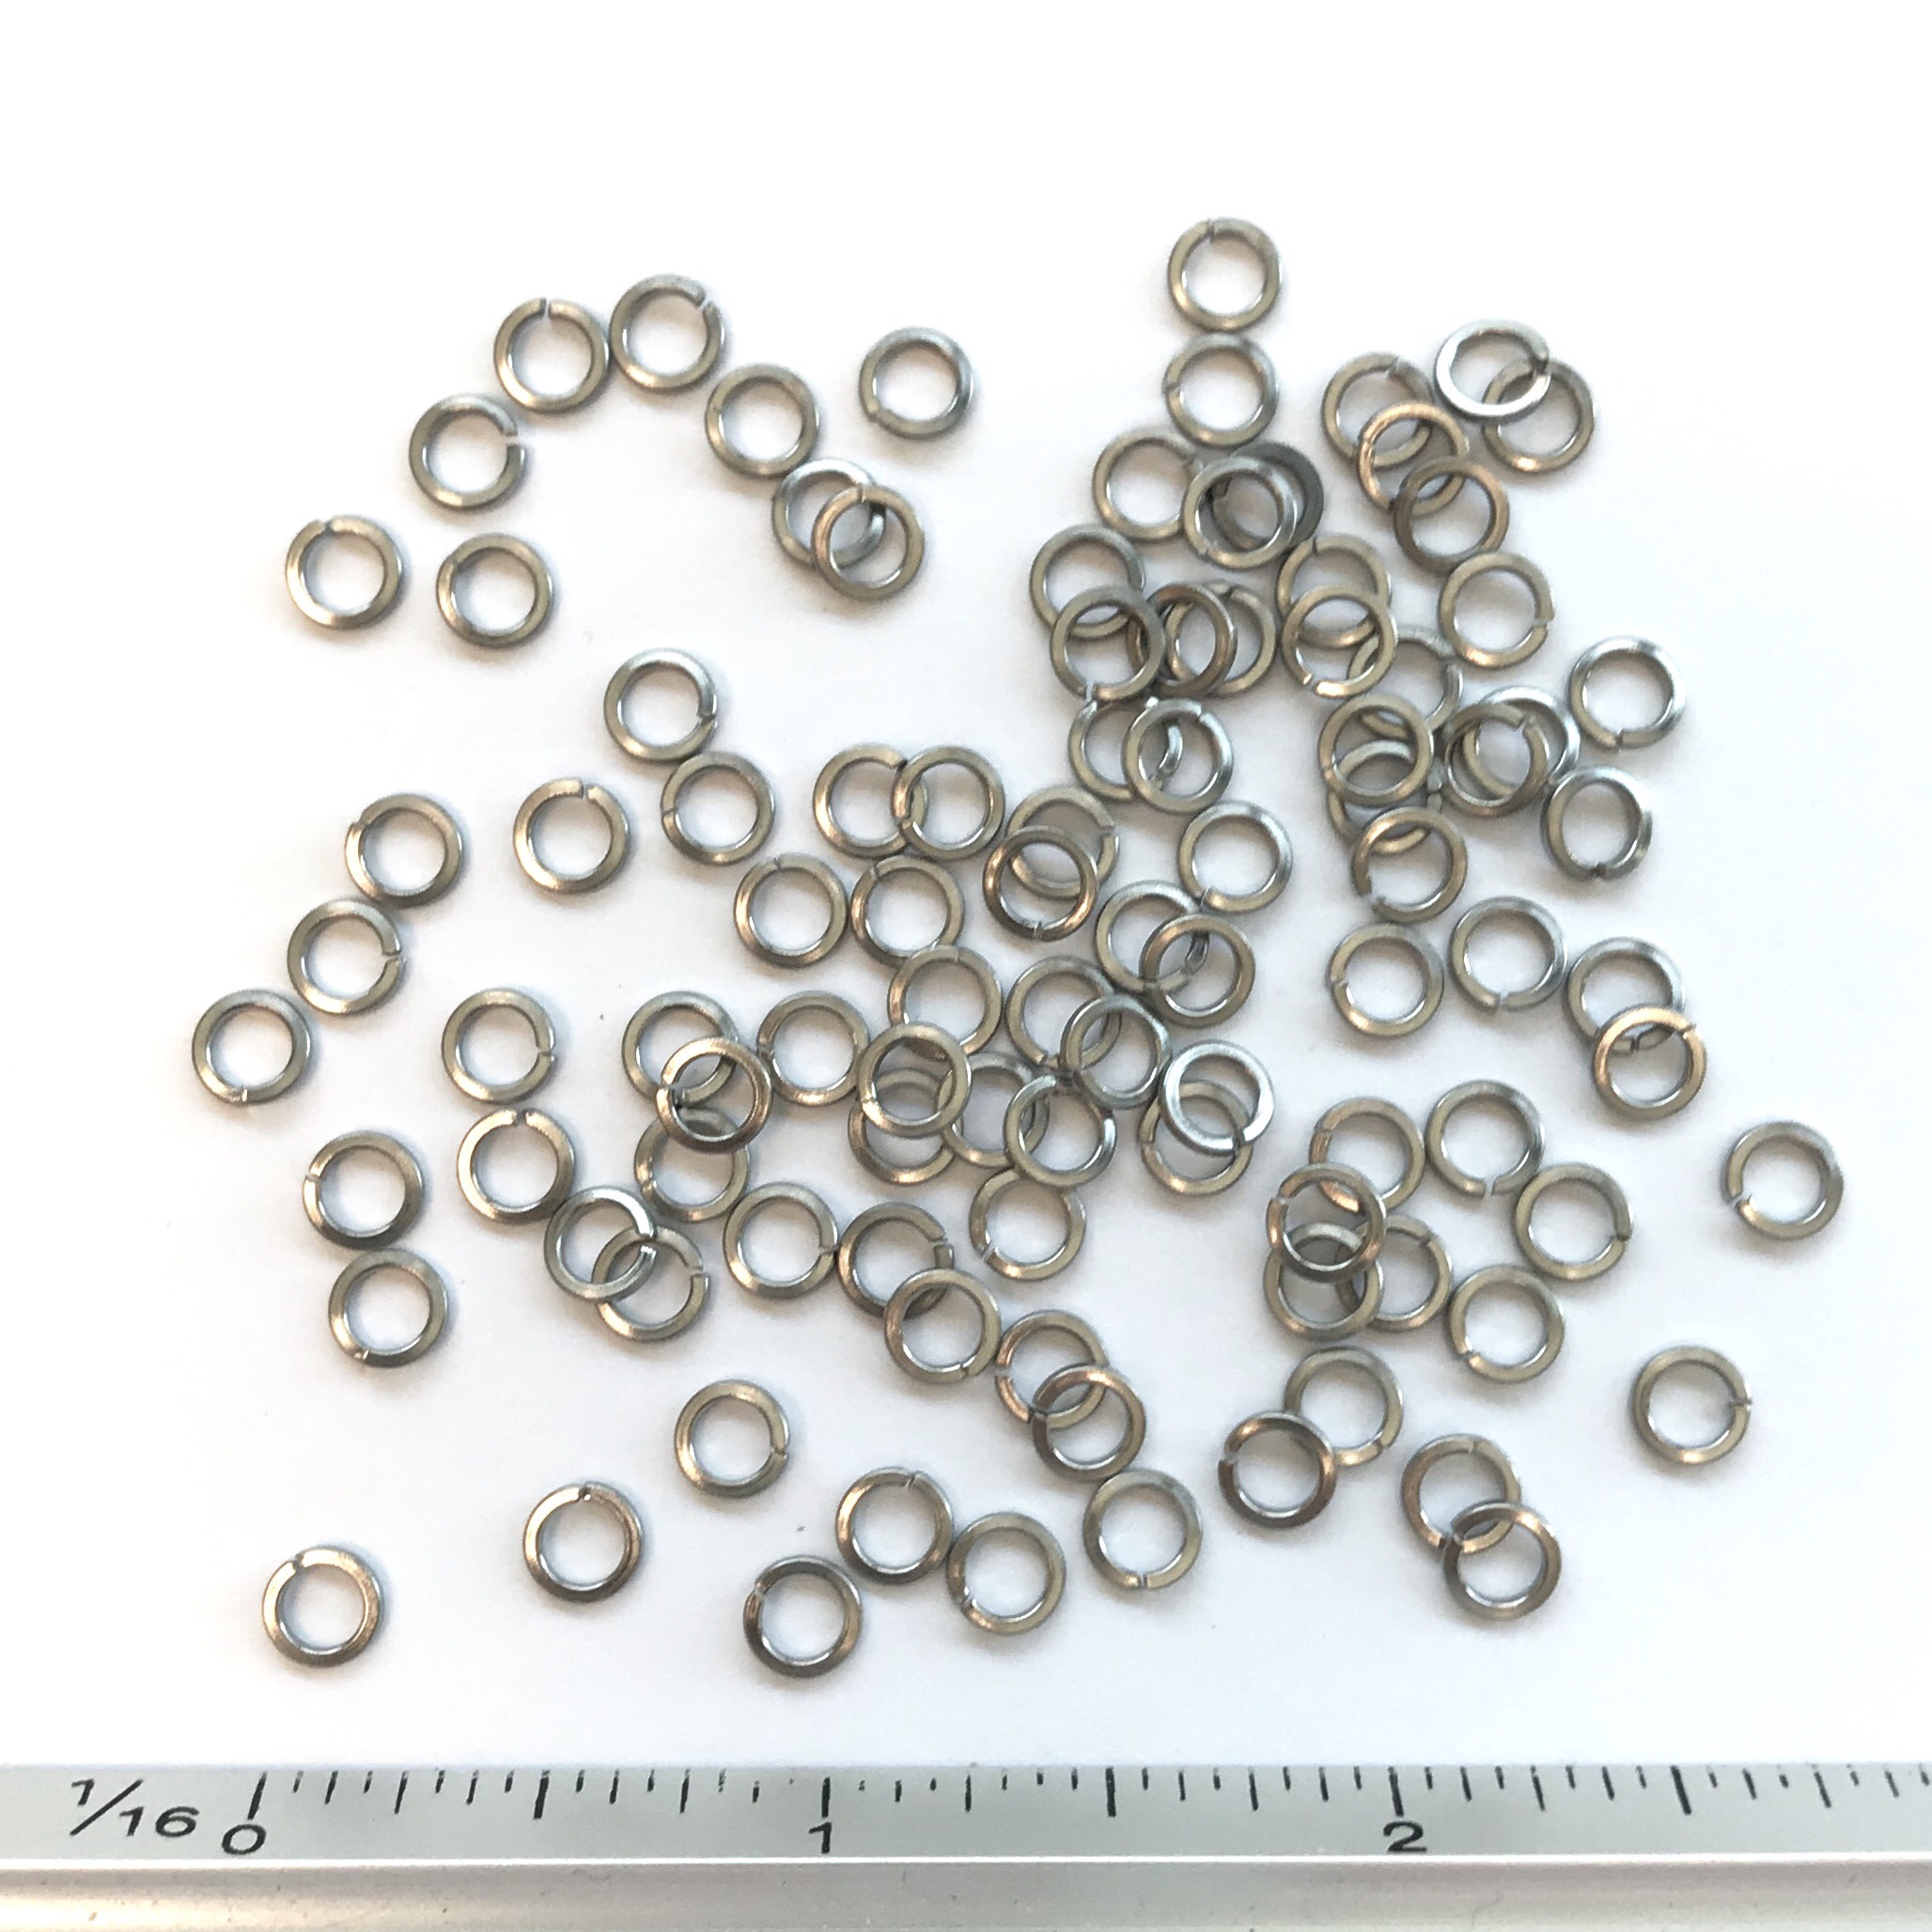 PKG of 100 #10 Split Ring Lock Washer 18-8 Stainless Steel 0.334”OD 